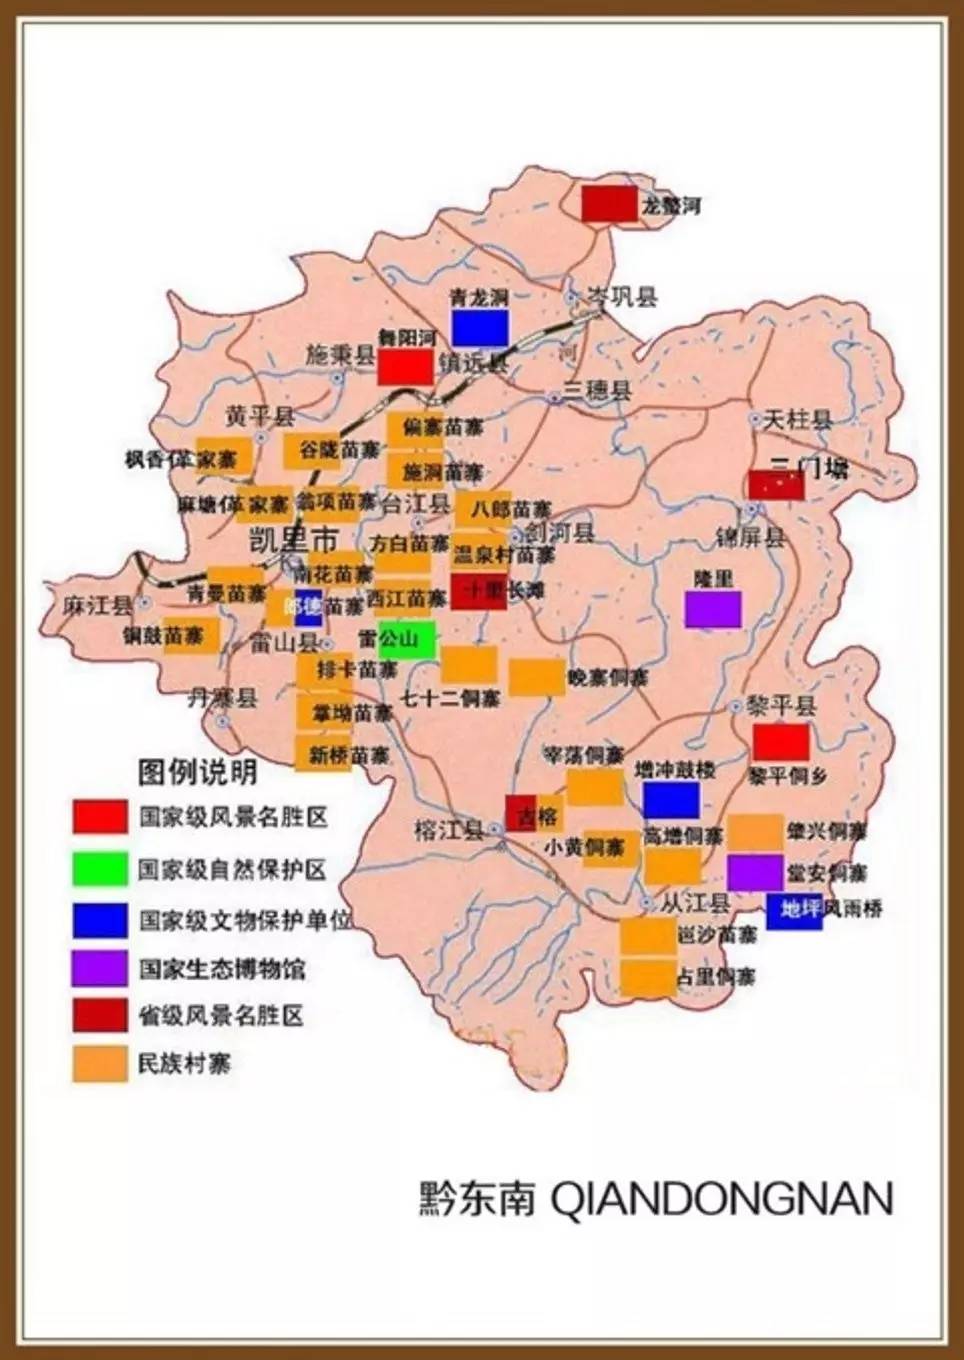 锦屏县城地图图片